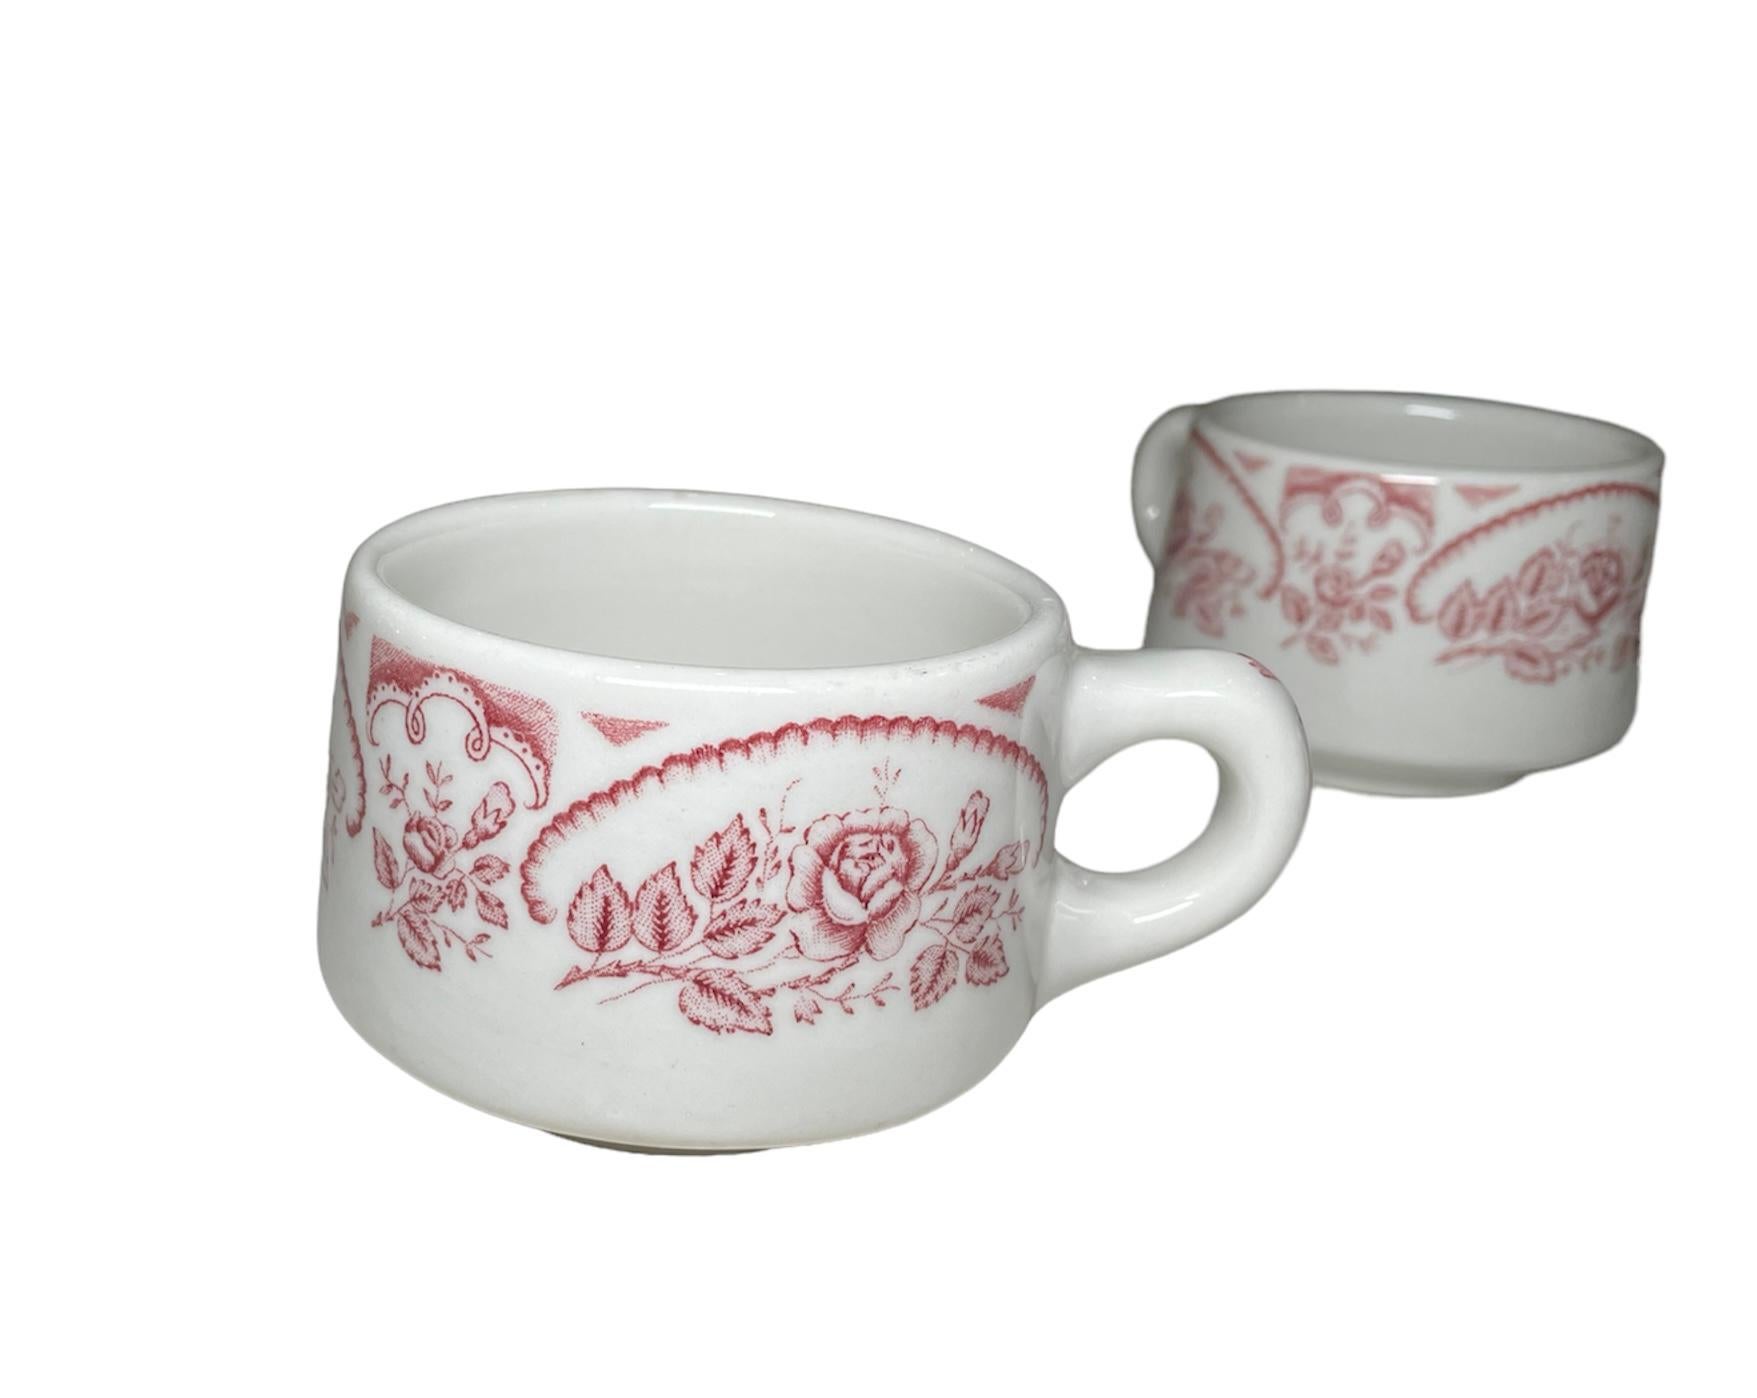 Dies ist ein Satz von vier Caribe China Kaffee / heiße Schokolade Tasse. Es zeigt eine schwere und runde weiße Tassen Hand gemalt Cranberry Farbe mit kleinen Blumensträußen von Rosen um sie herum. Die Blumensträuße sind halb umrahmt mit